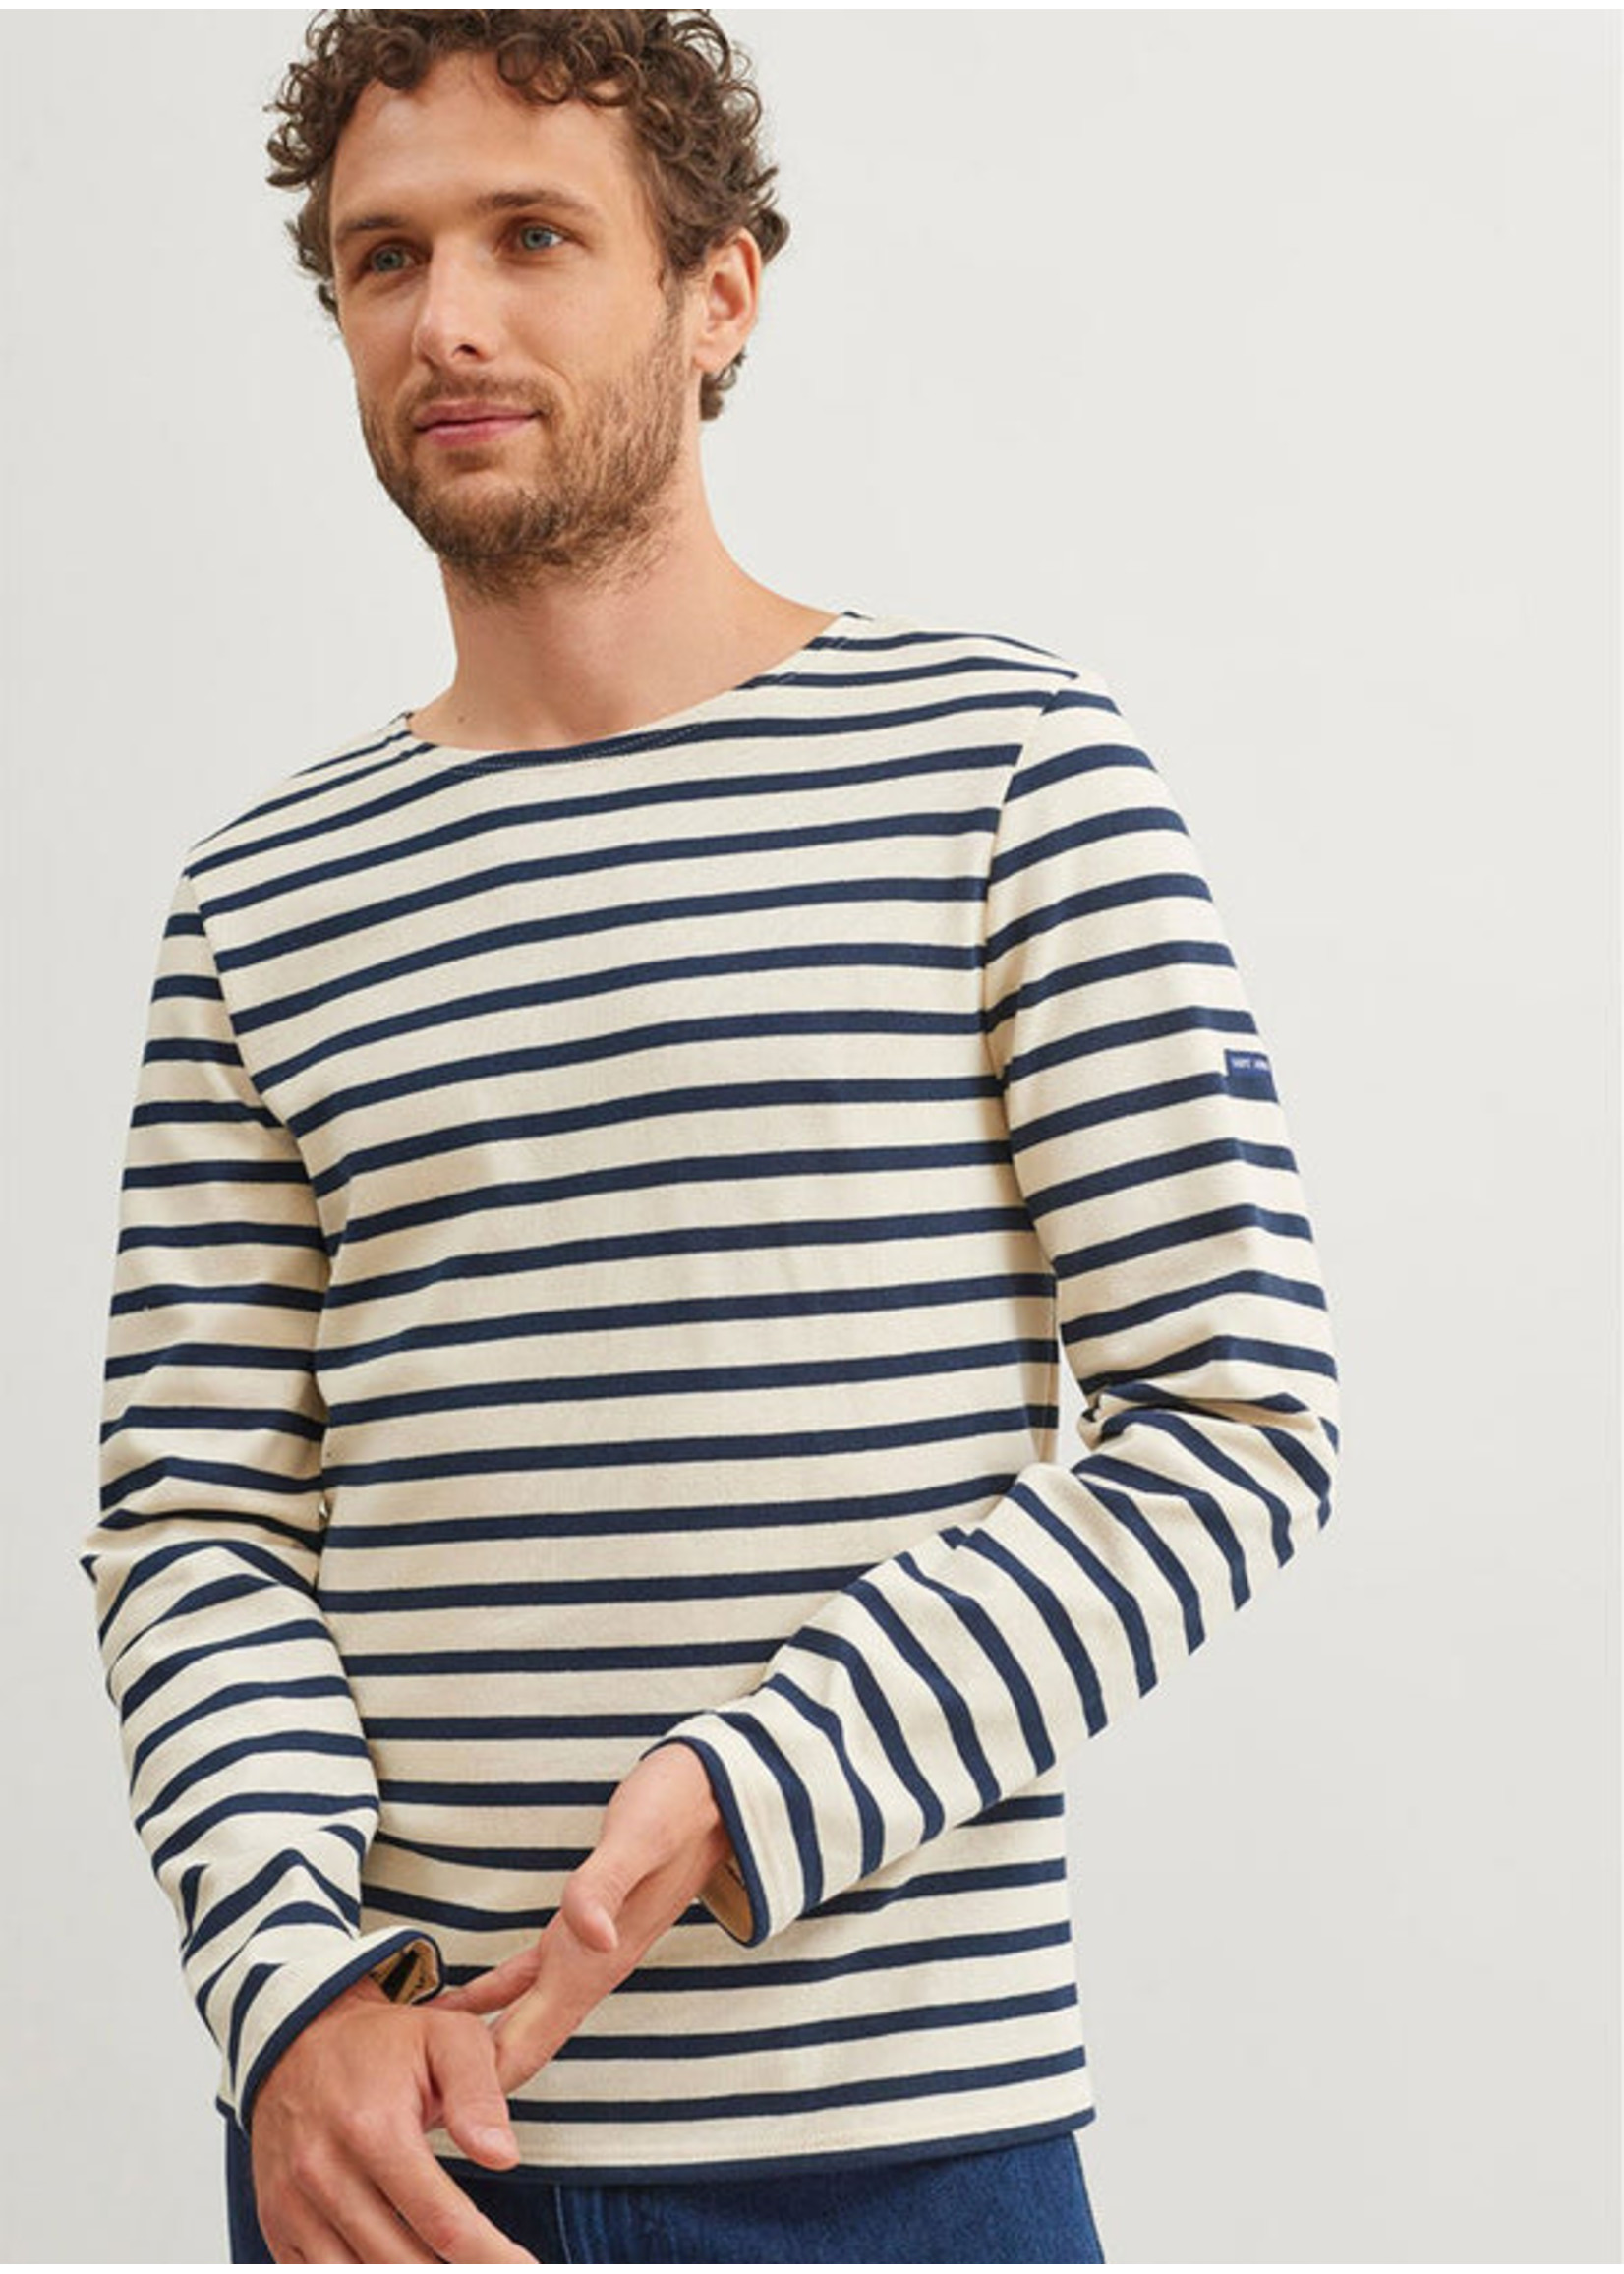 SAINT-JAMES Authentic Meridien breton cotton stripe shirt by Saint-James - Unisex fit